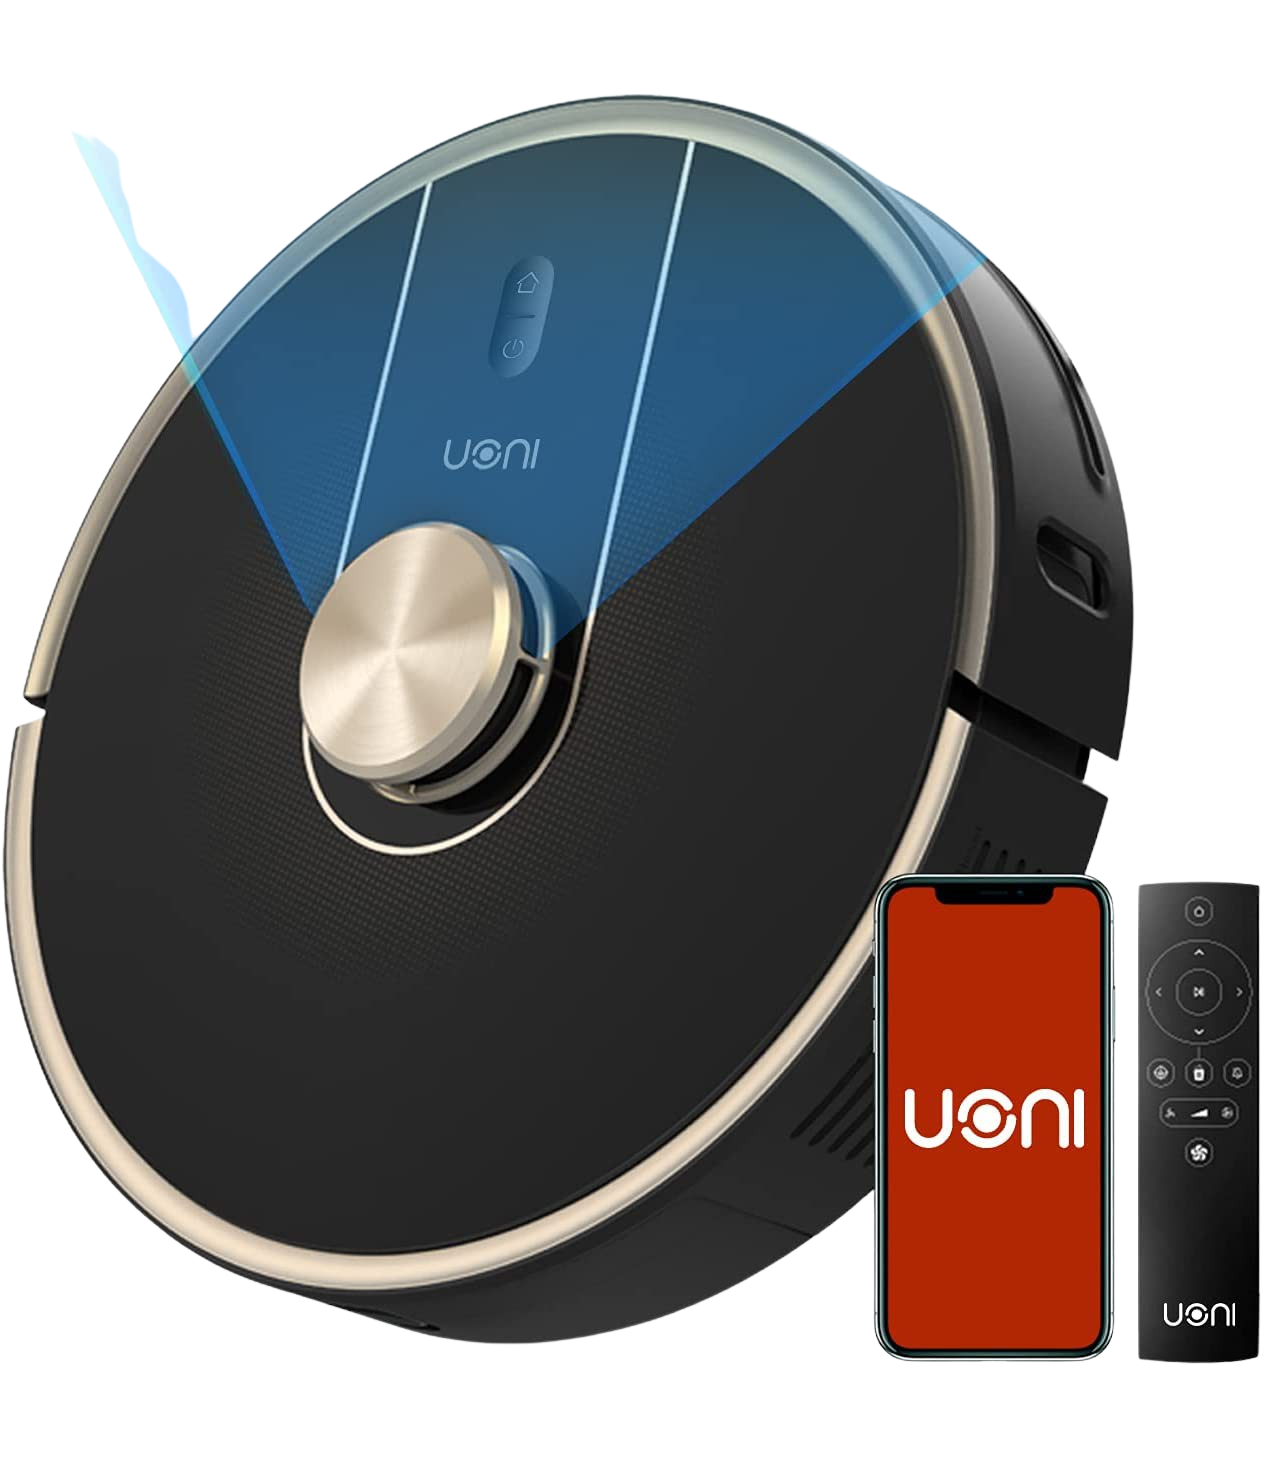 Uoni V980 Plus Robot Vacuum Cleaner New